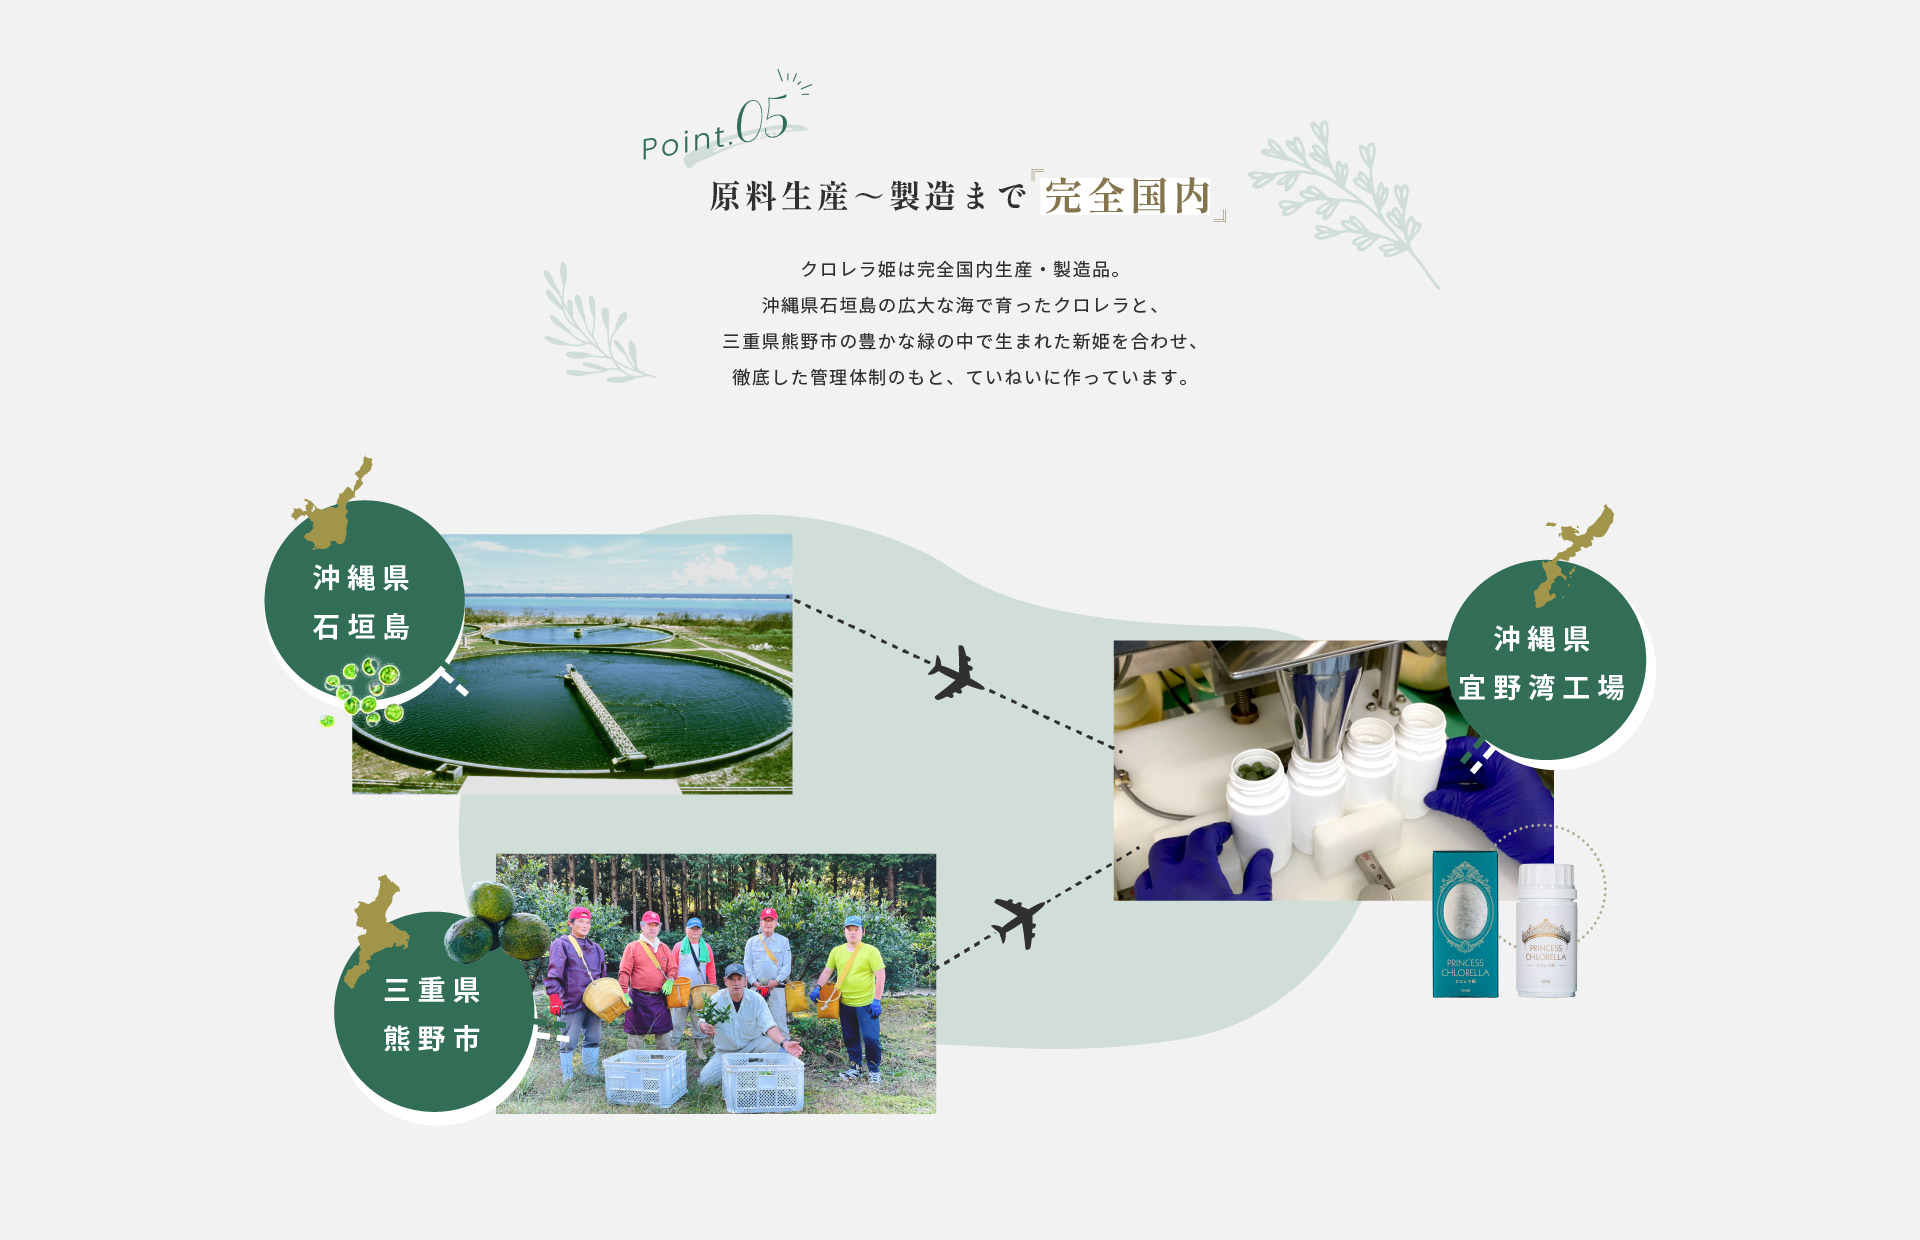 原料生産～製造まで 完全国内　クロレラ姫は完全国内生産・製造品。沖縄県石垣島の広大な海で育ったクロレラと、三重県熊野市の豊かな緑の中で生まれた新姫を合わせ、徹底した管理体制のもと、ていねいに作っています。